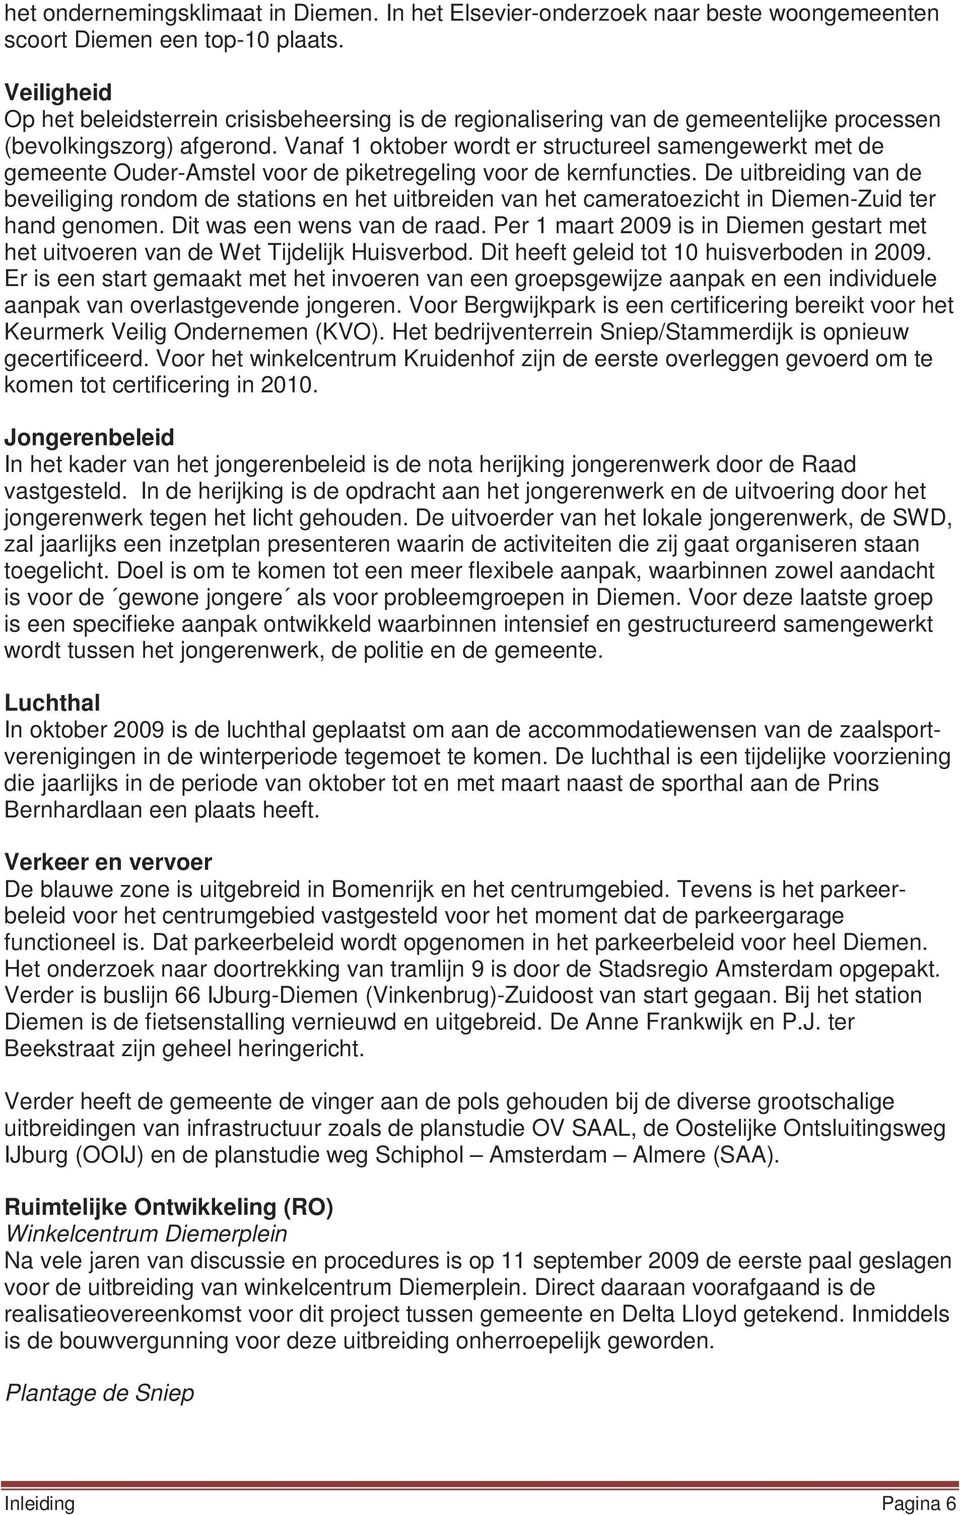 Vanaf 1 oktober wordt er structureel samengewerkt met de gemeente Ouder-Amstel voor de piketregeling voor de kernfuncties.